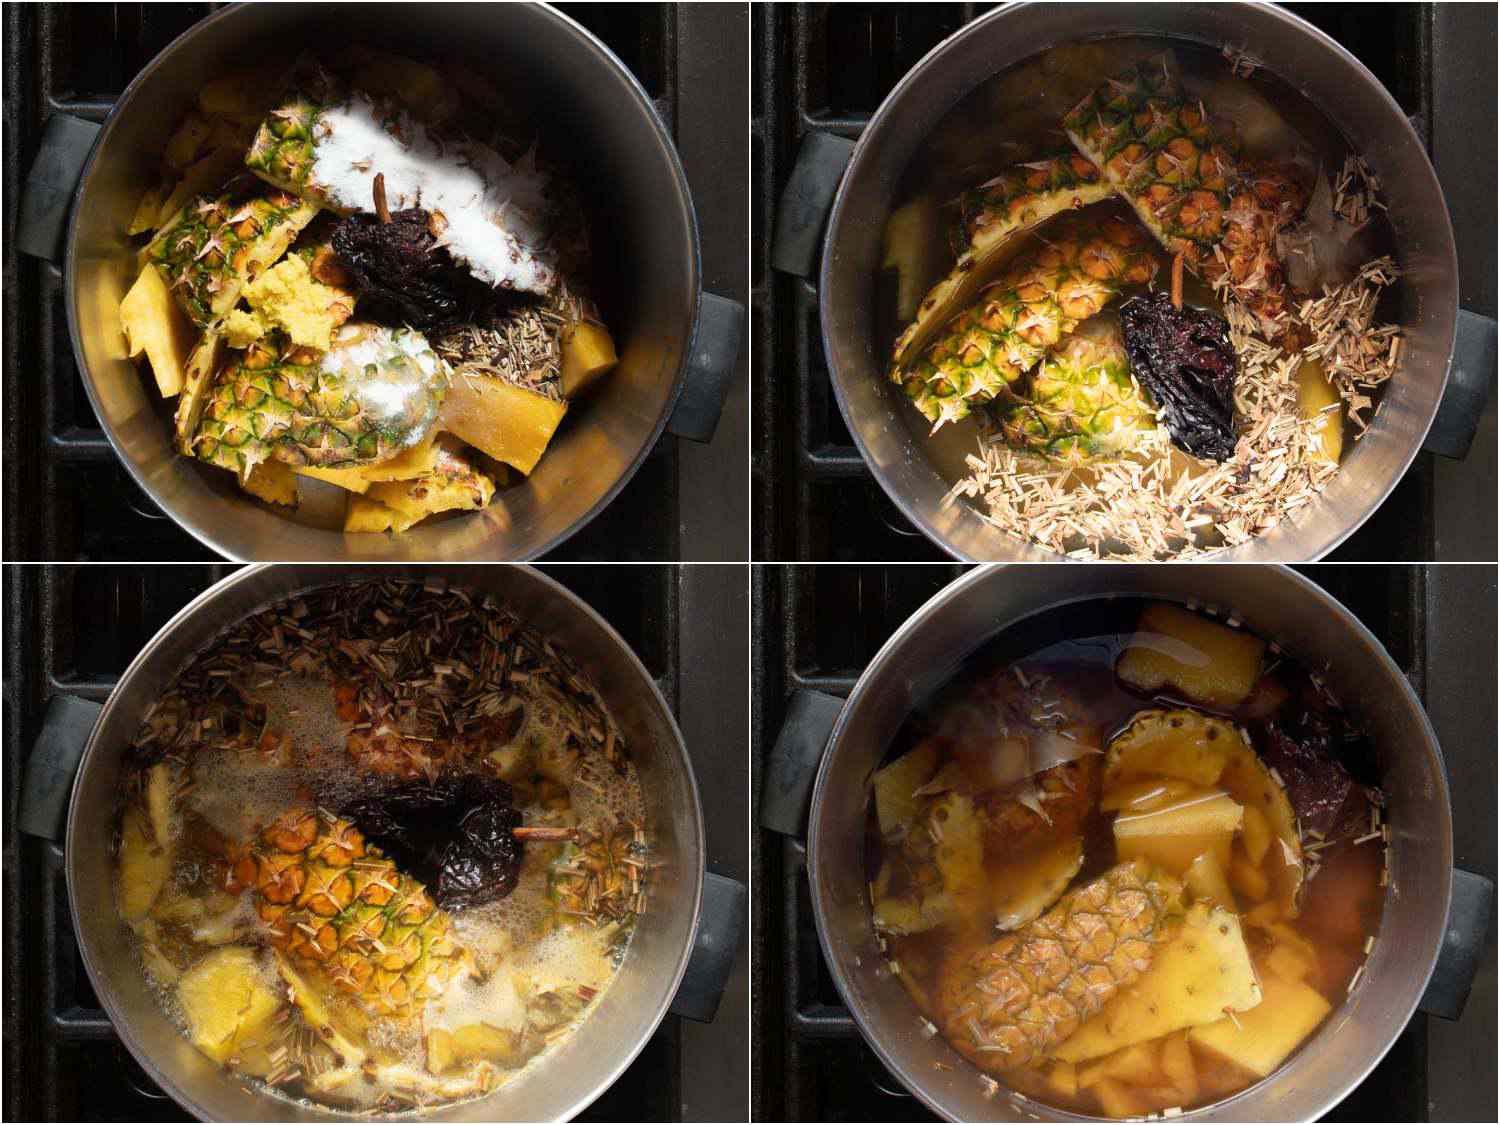 拼贴:菠萝核和菠萝皮，糖，辣椒和香料在锅里;水说;慢炖后的;在烹饪gydF4y2Ba